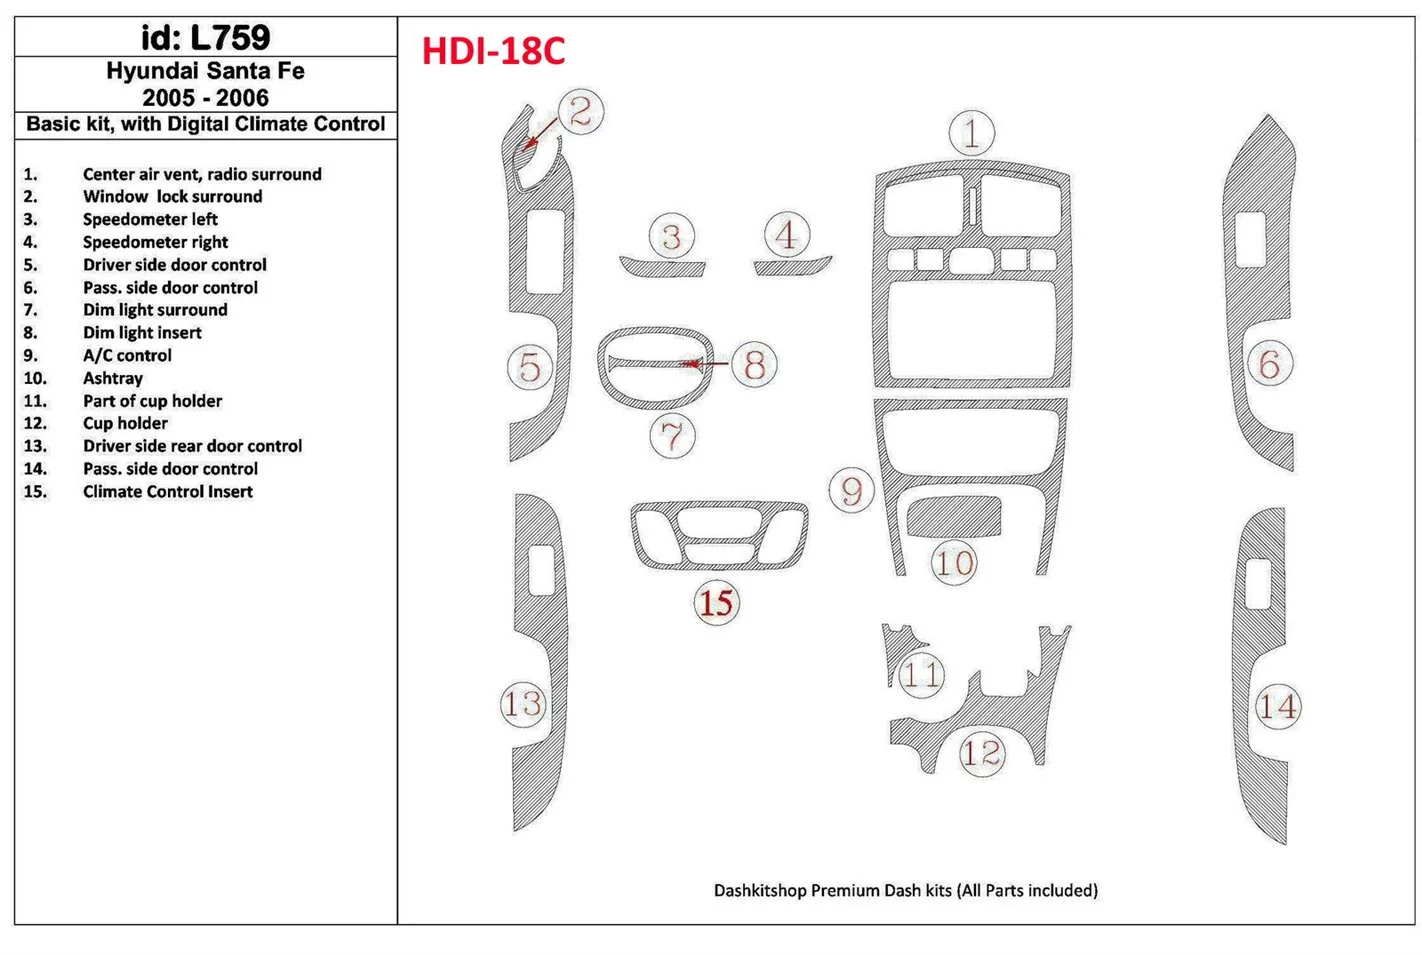 Hyundai Santa Fe 2005-2006 Paquet de base, Avec Automatic Climate Control BD Kit la décoration du tableau de bord - 1 - habillag